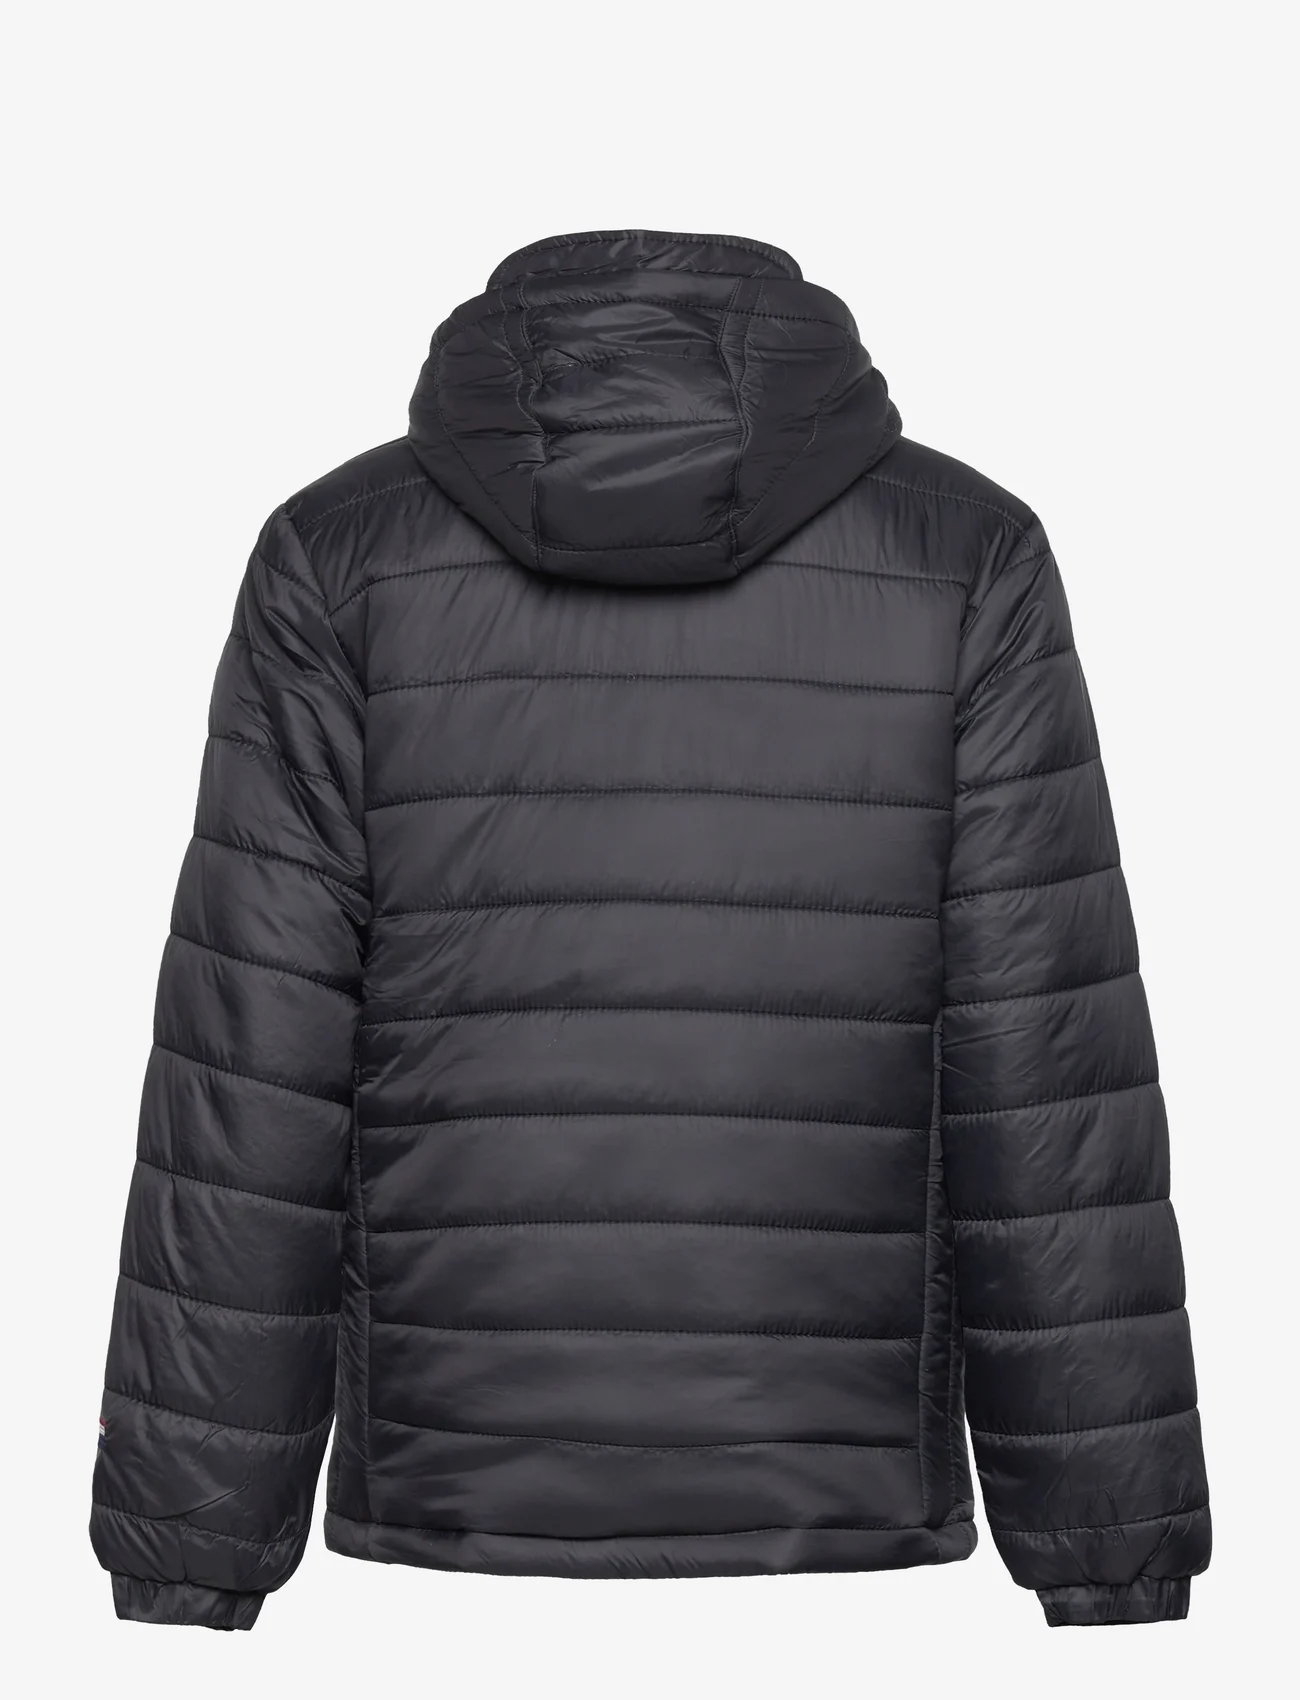 U.S. Polo Assn. - USPA Hooded Quilted Jacket - dunjakker og fôrede jakker - black - 1